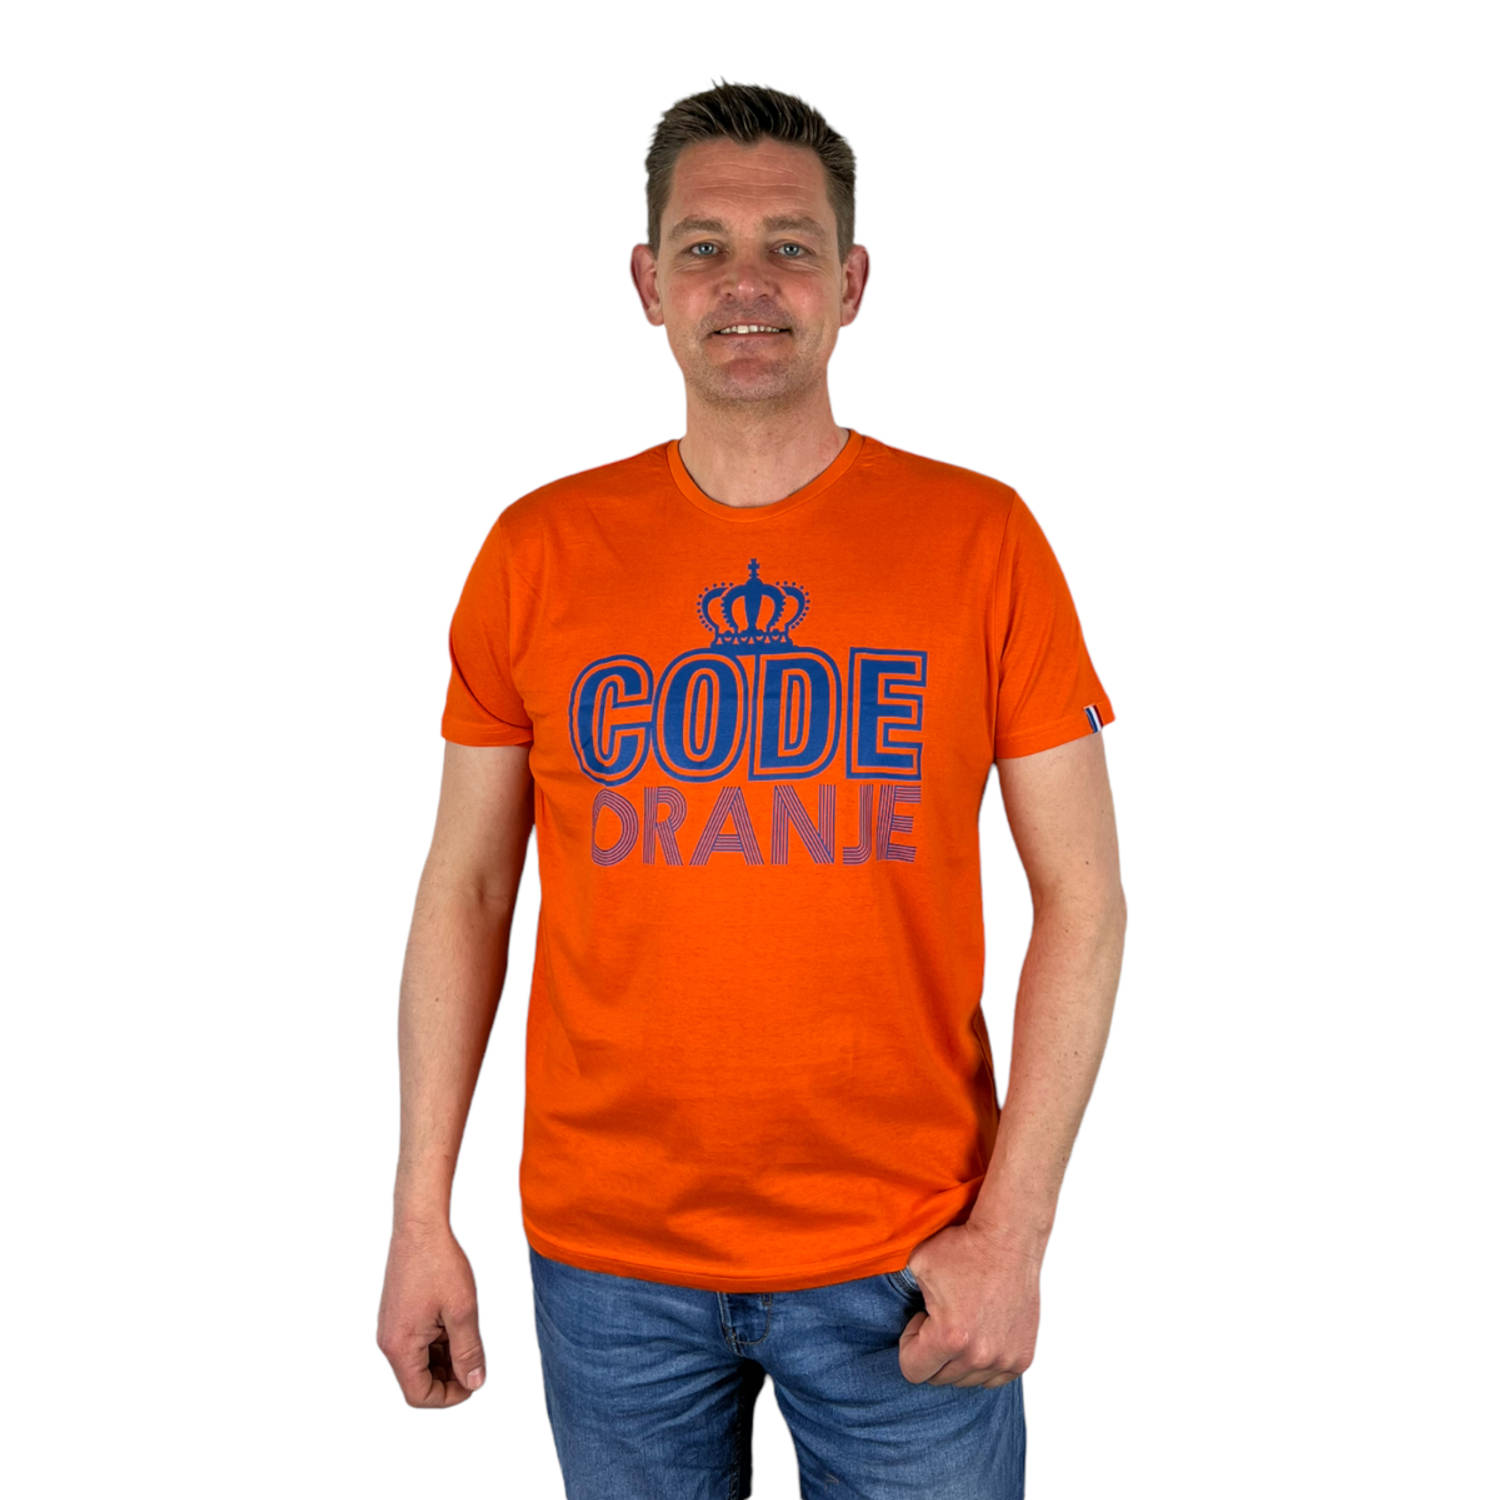 Oranje Heren T-Shirt - Code Oranje - Voor Koningsdag - Holland - Formule 1 - EK/WK Voetbal - Maat XL